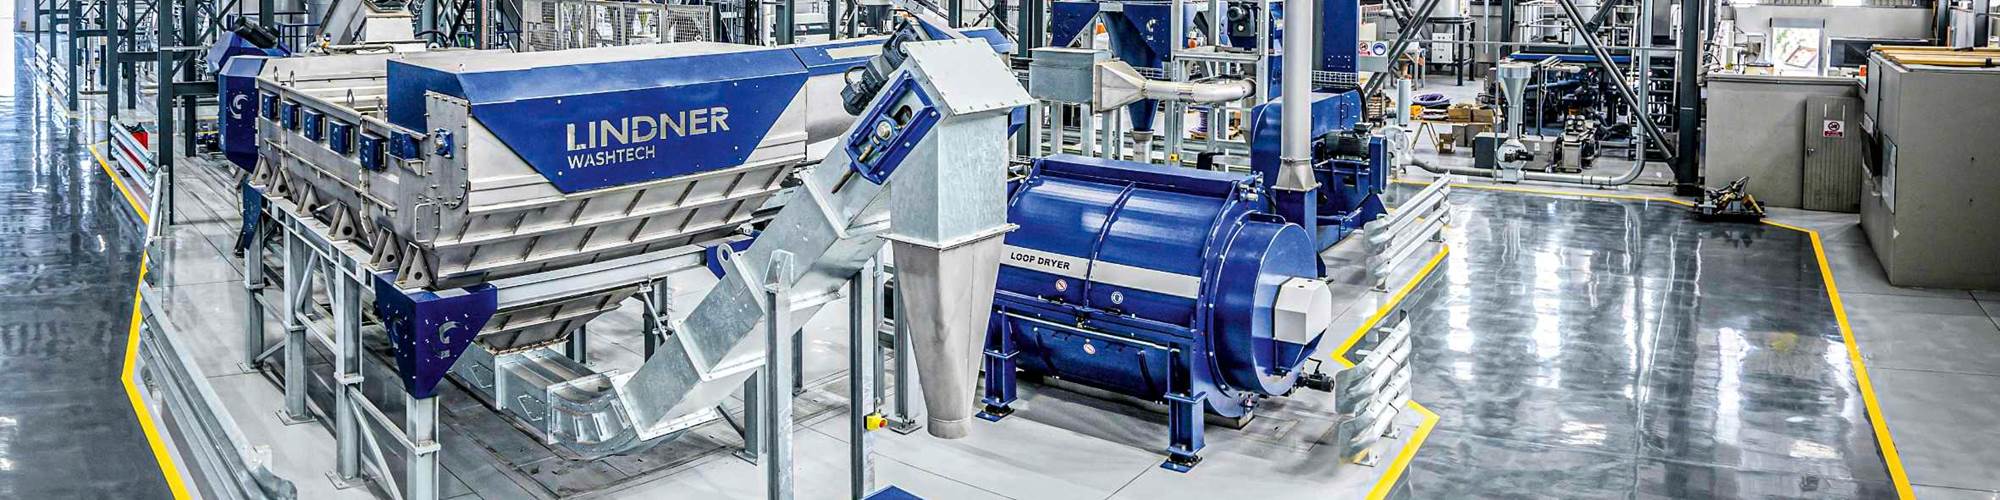 Durante 10 años, Lindner Washtech ha desarrollado e instalado sistemas modulares completos de lavado y clasificación para reciclar termoplásticos en todo el mundo.